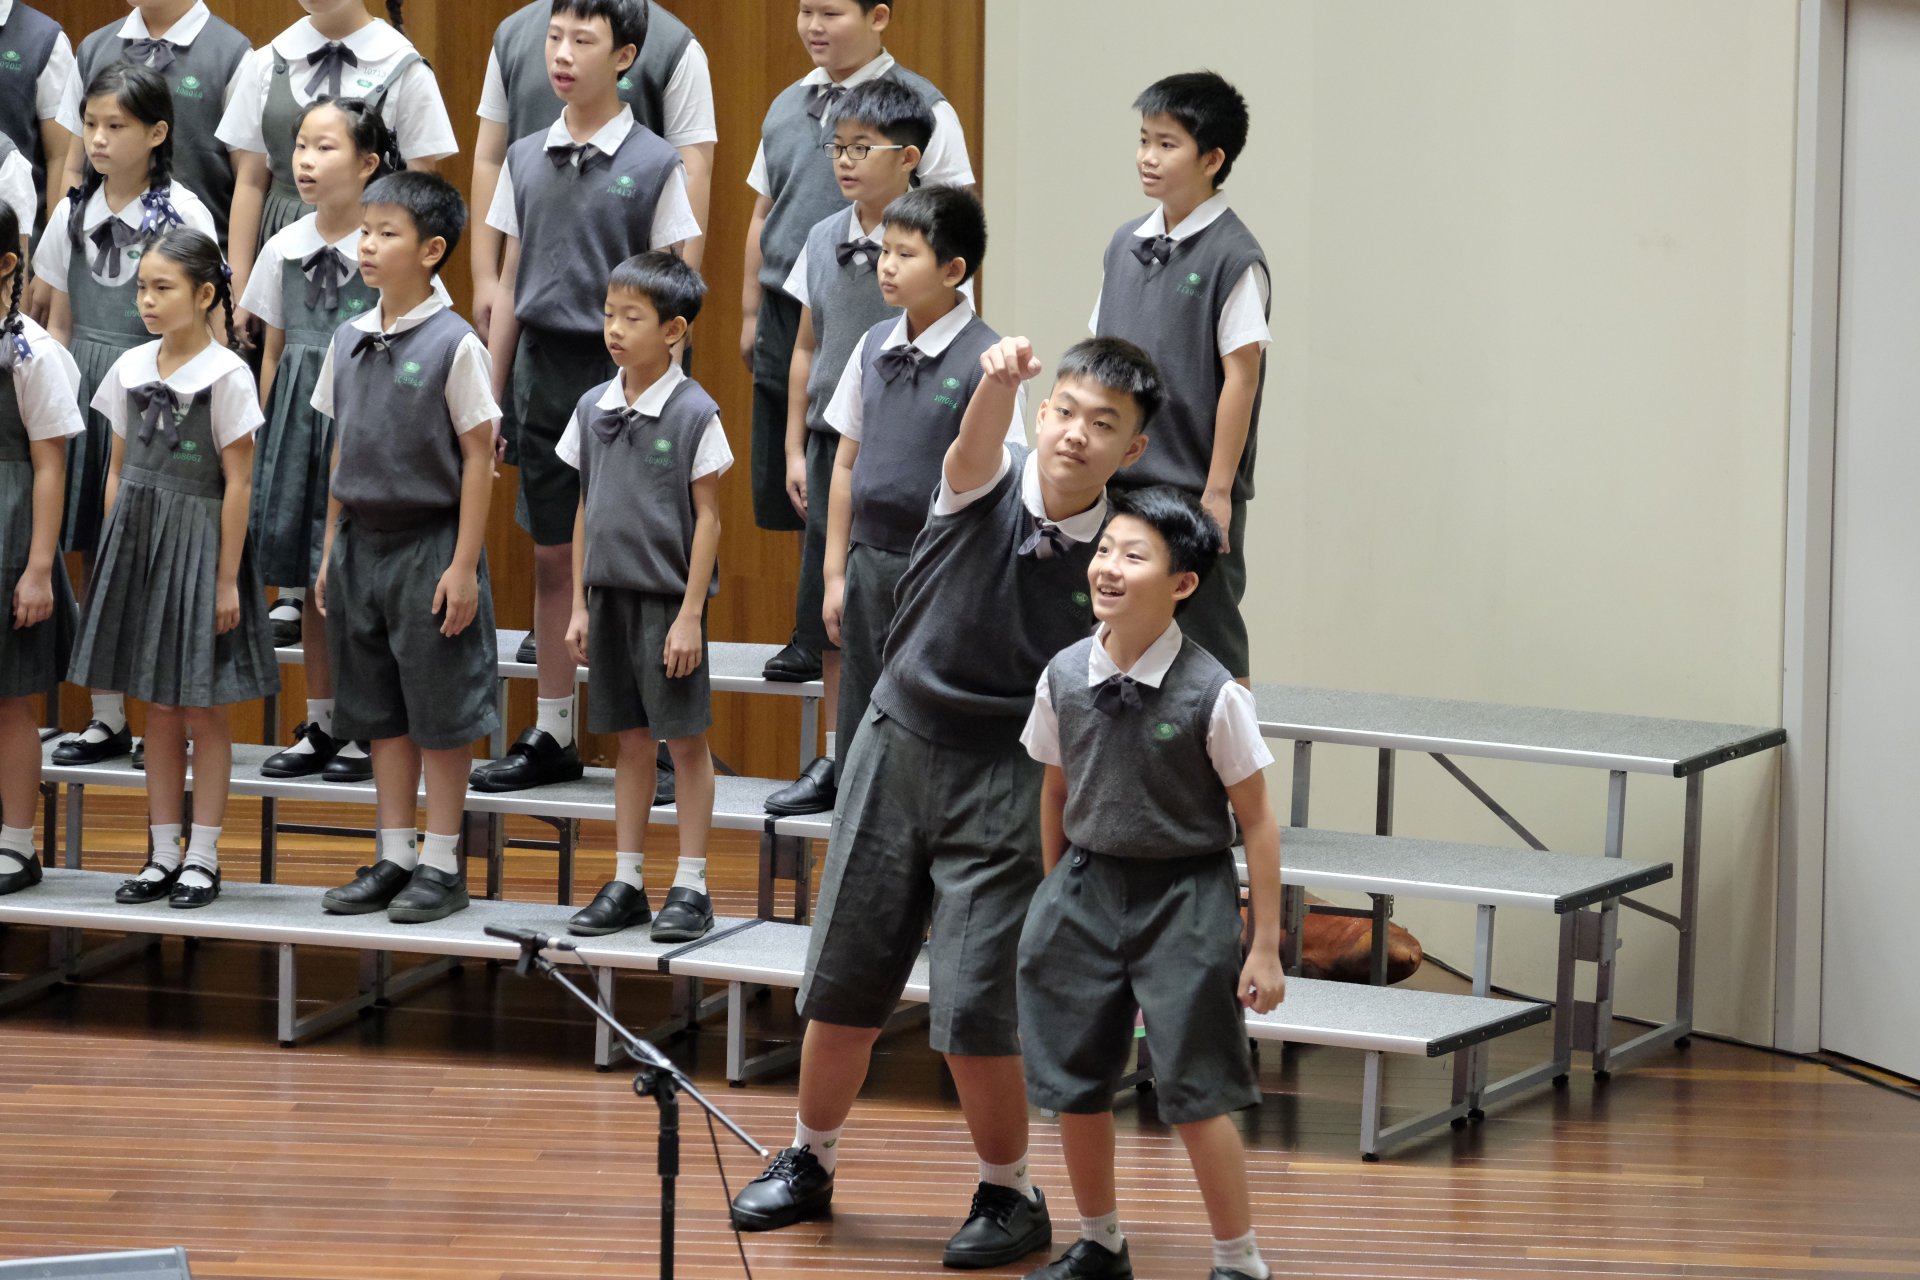 合唱團演唱閩南語童謠〈點仔膠〉，搭配逗趣的戲劇，展現了臺灣文化的多樣性和豐富性。